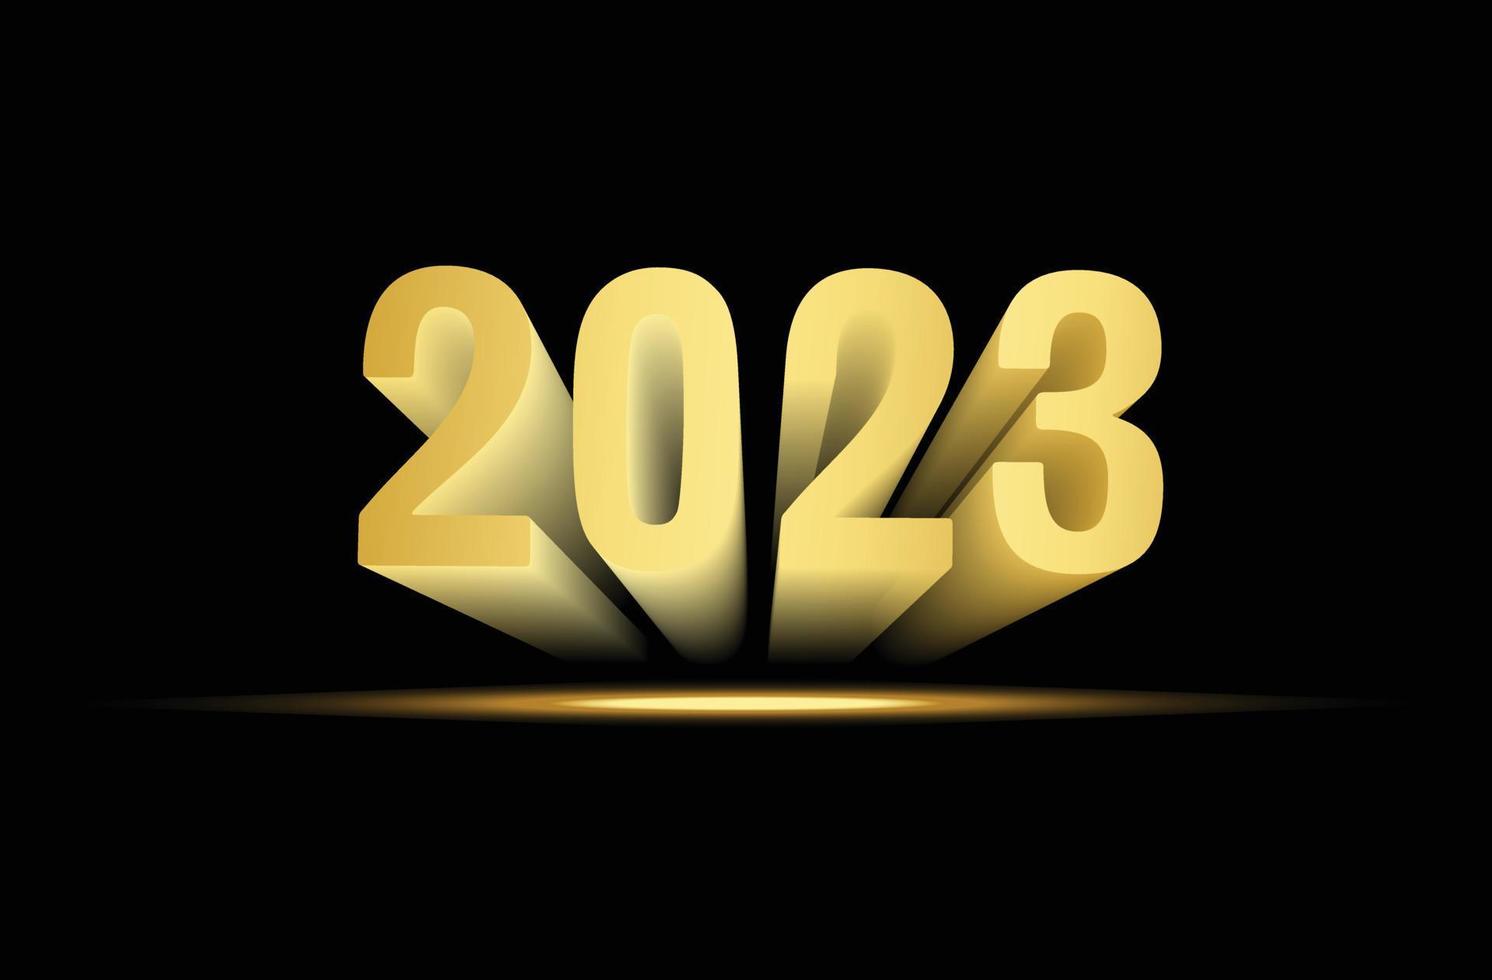 bellissimo d'oro contento nuovo anno 2023 3d stile testo vettore